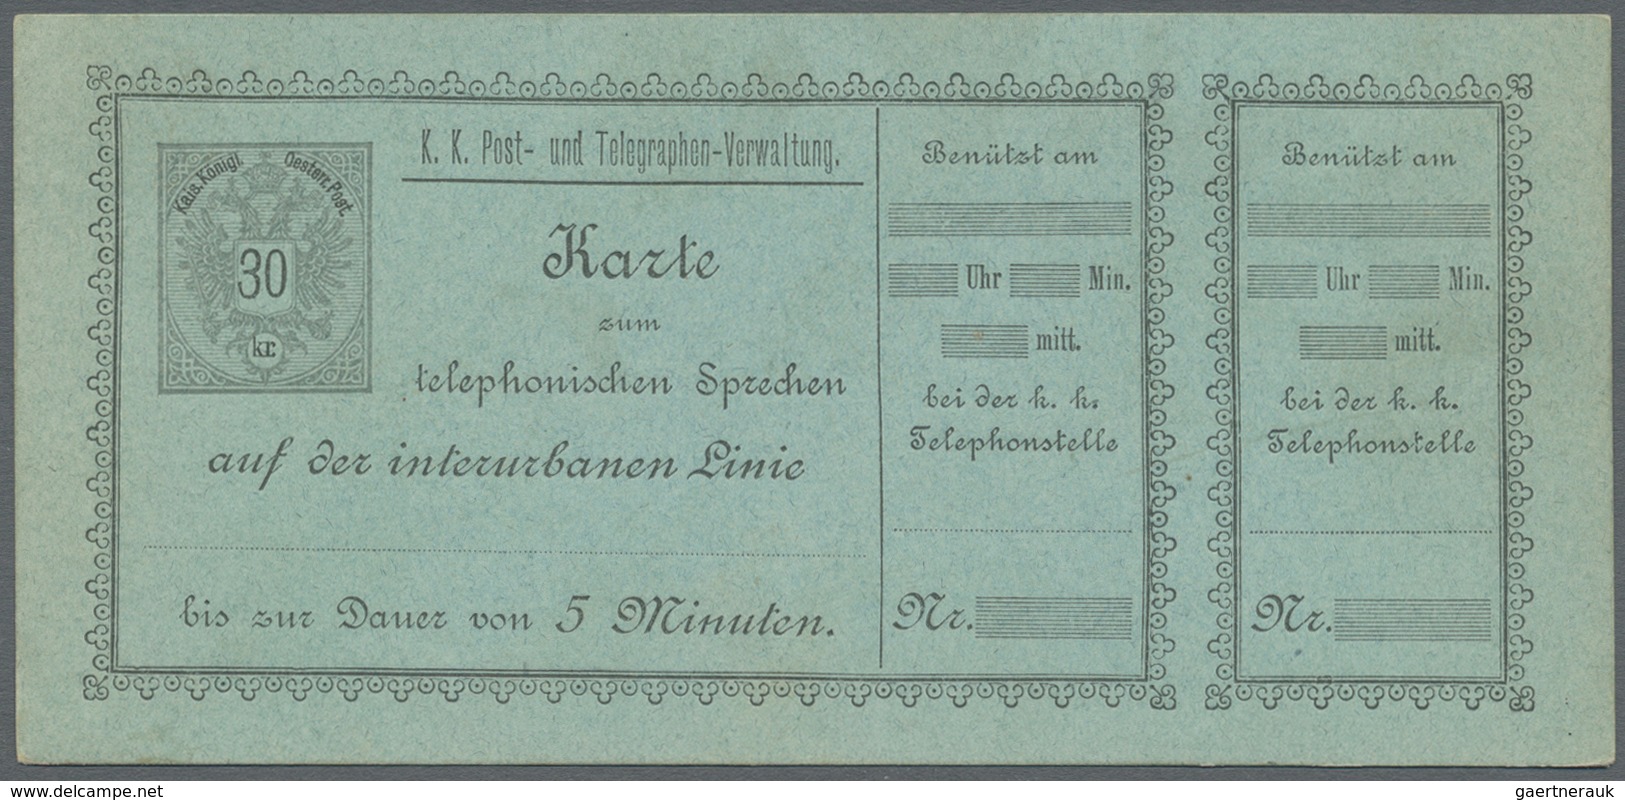 GA Österreich - Telefonsprechkarten: 1886-1900: Sammlung von 11 UNGEBRAUCHTEN, frühen Telefonsprechkart